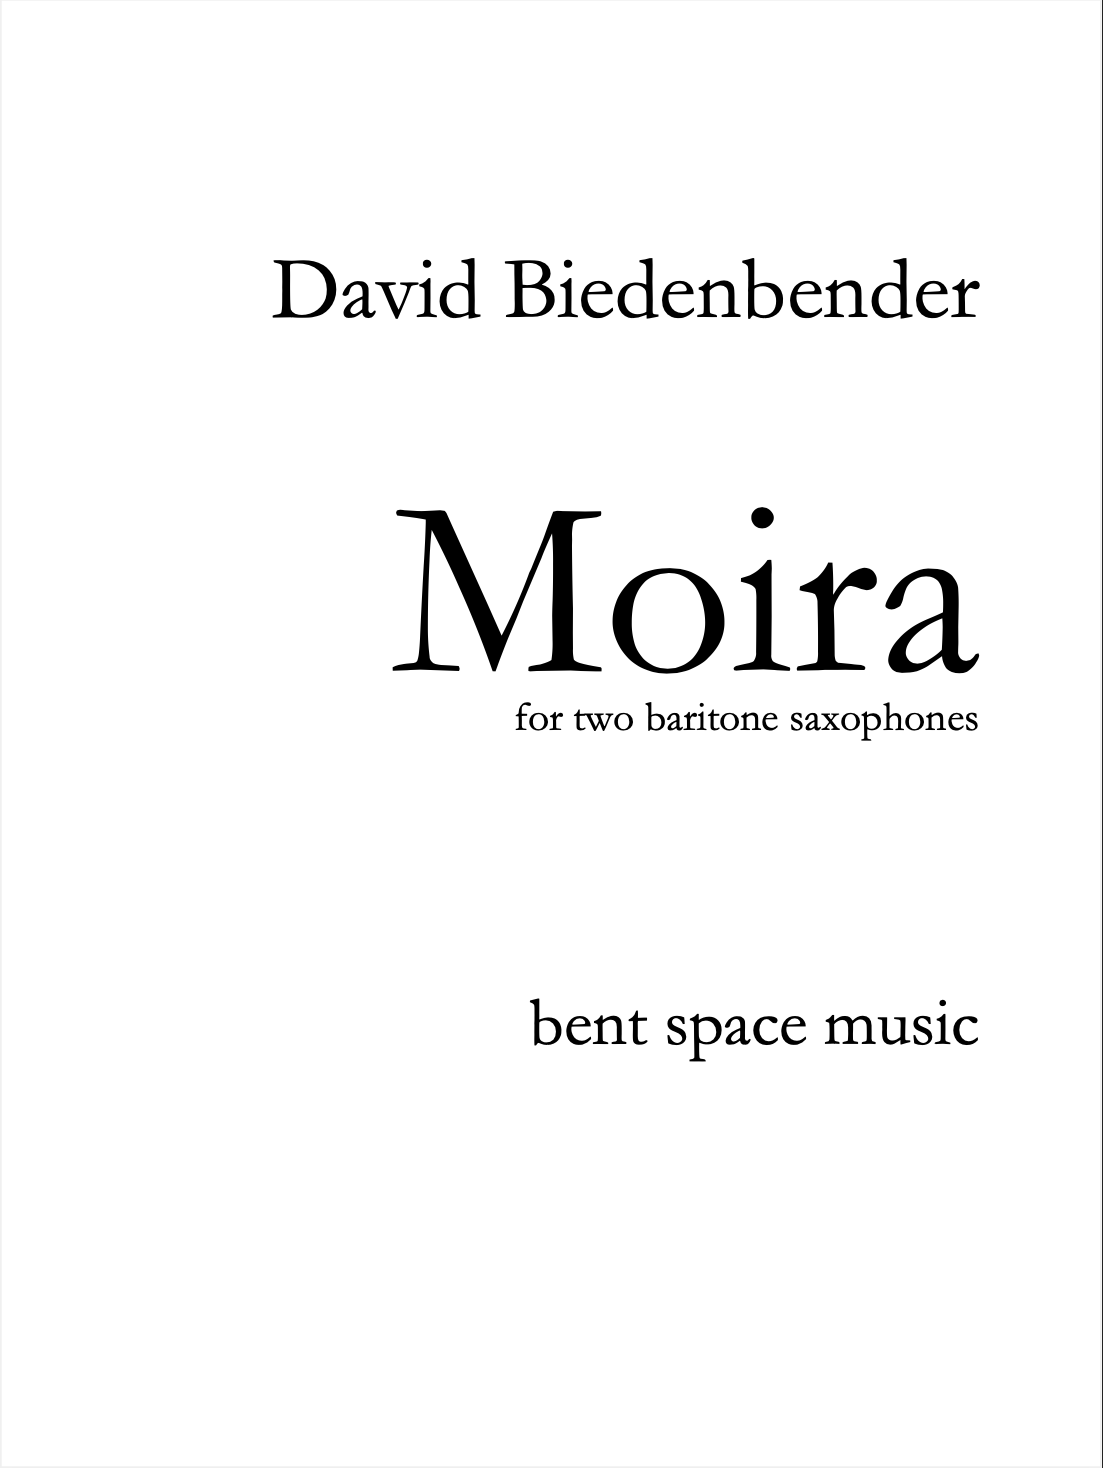 Moria by David Biedenbender